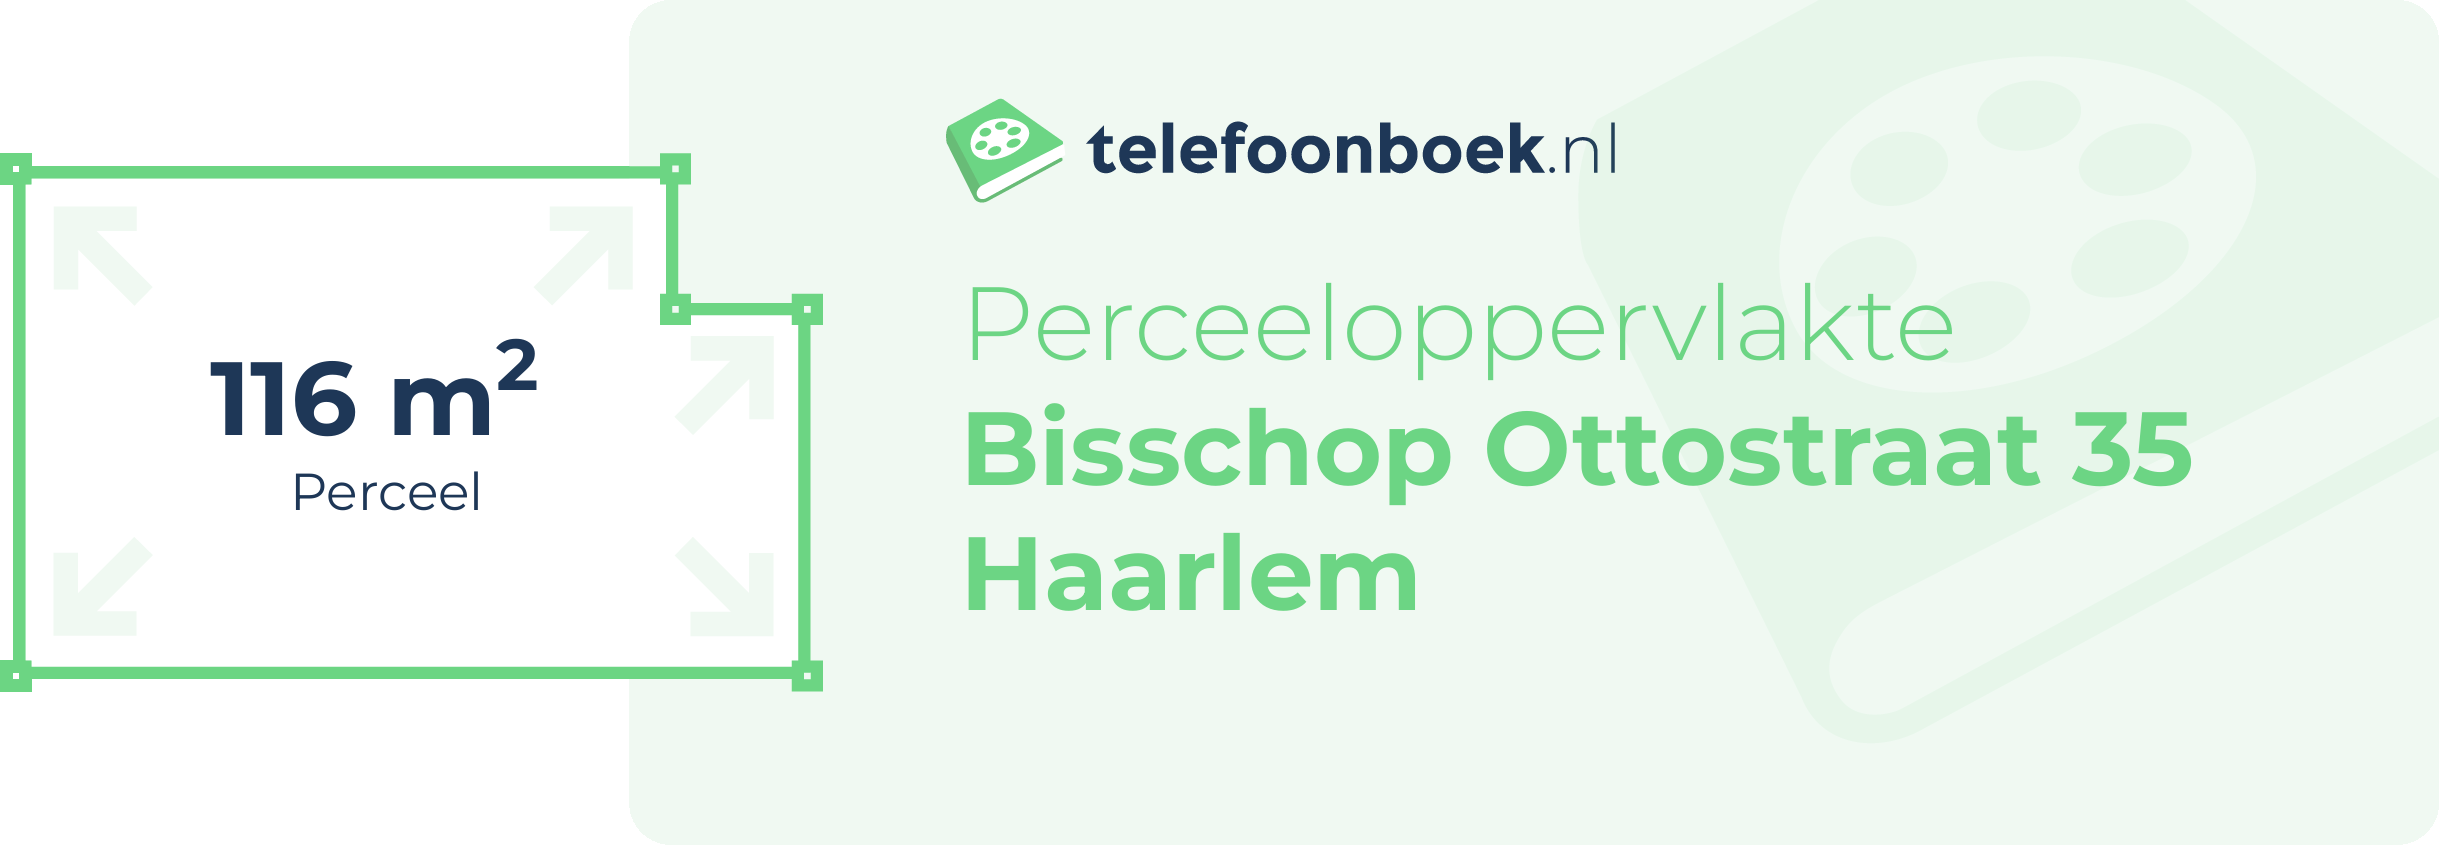 Perceeloppervlakte Bisschop Ottostraat 35 Haarlem